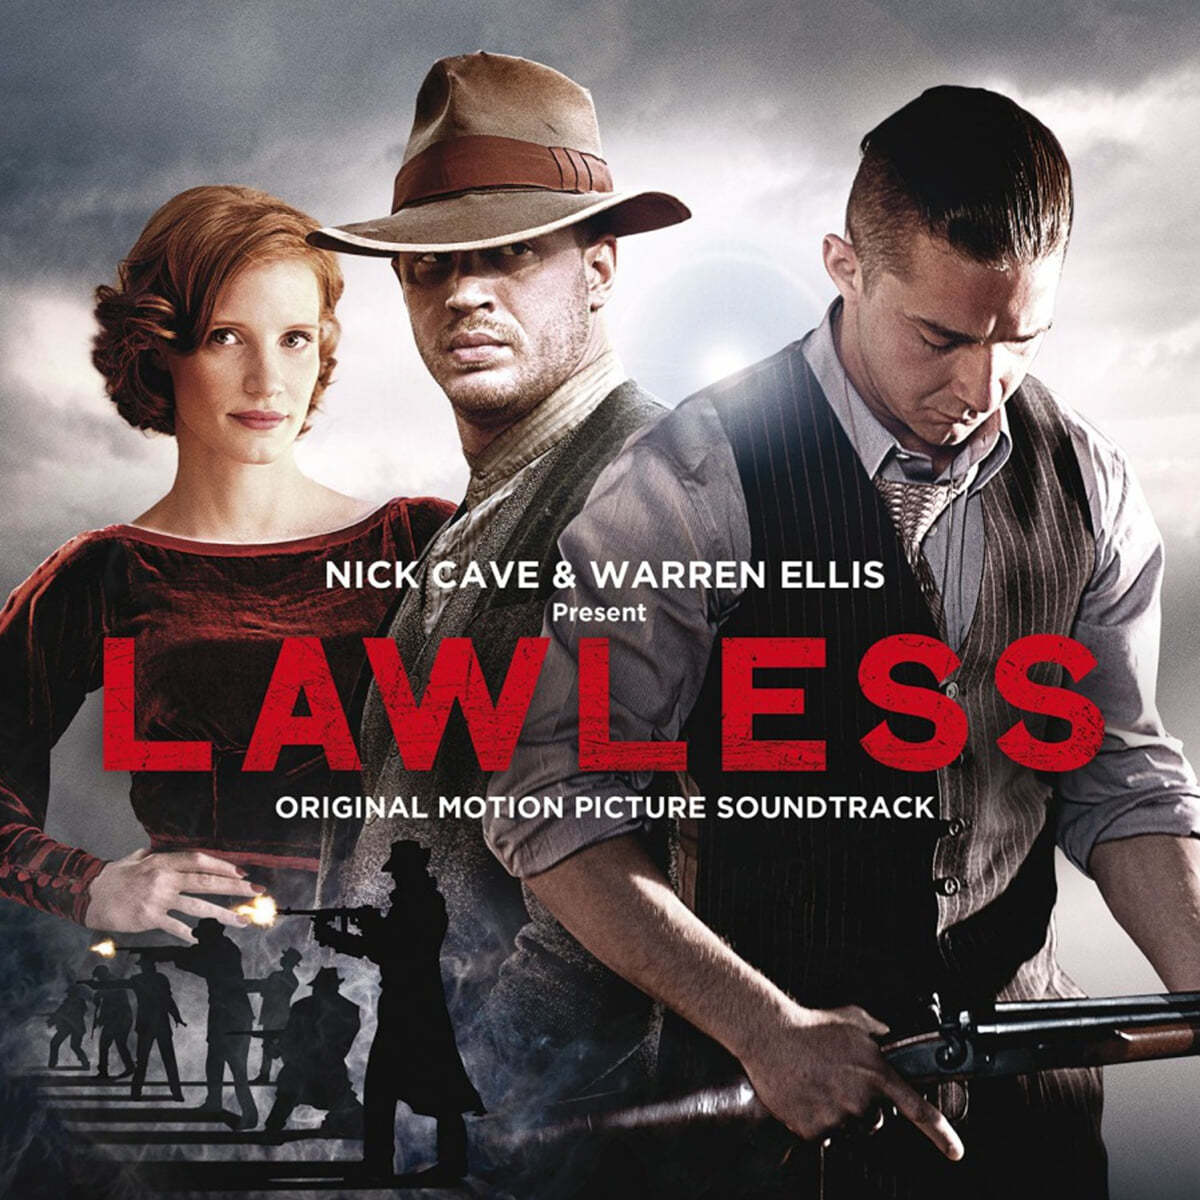 로우리스: 나쁜 영웅들 영화음악 (Lawless OST by Nick Cave / Warren Ellis) [LP] 